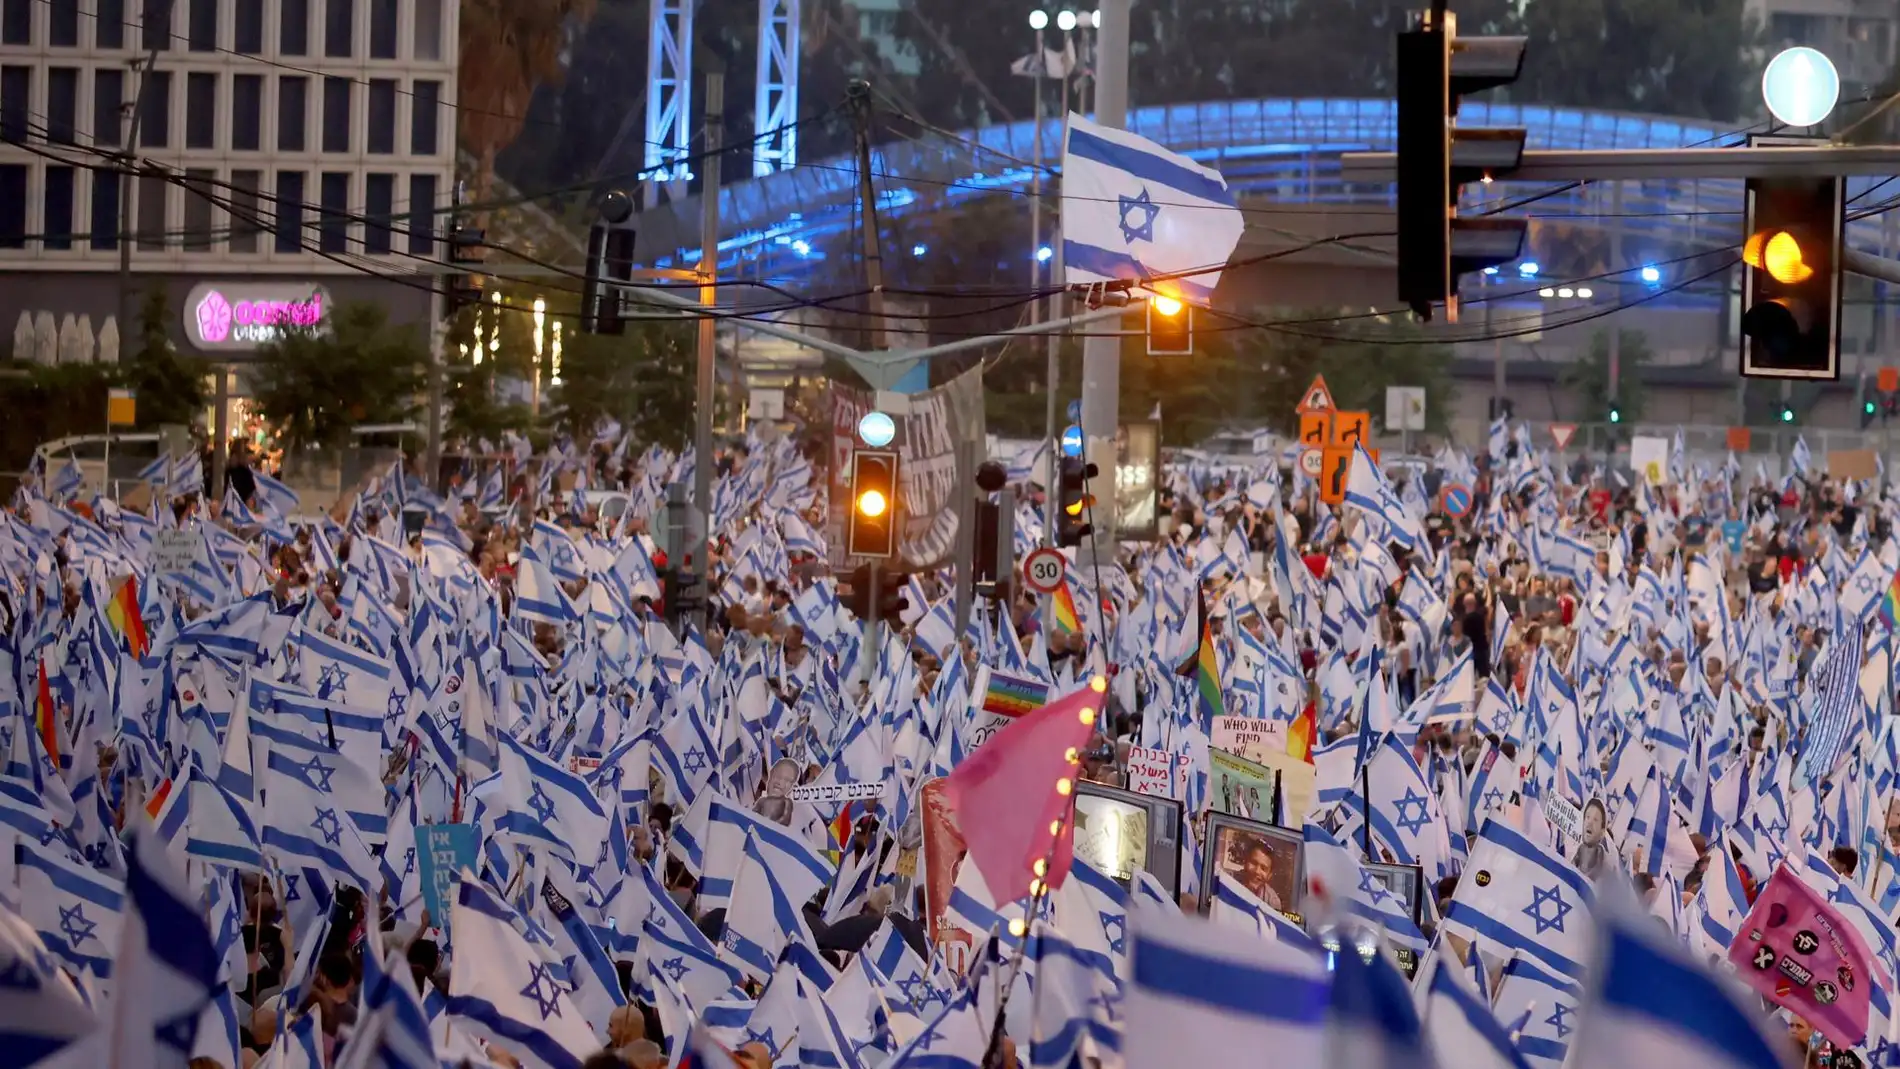 Manifestación masiva en las calles de Tel Aviv